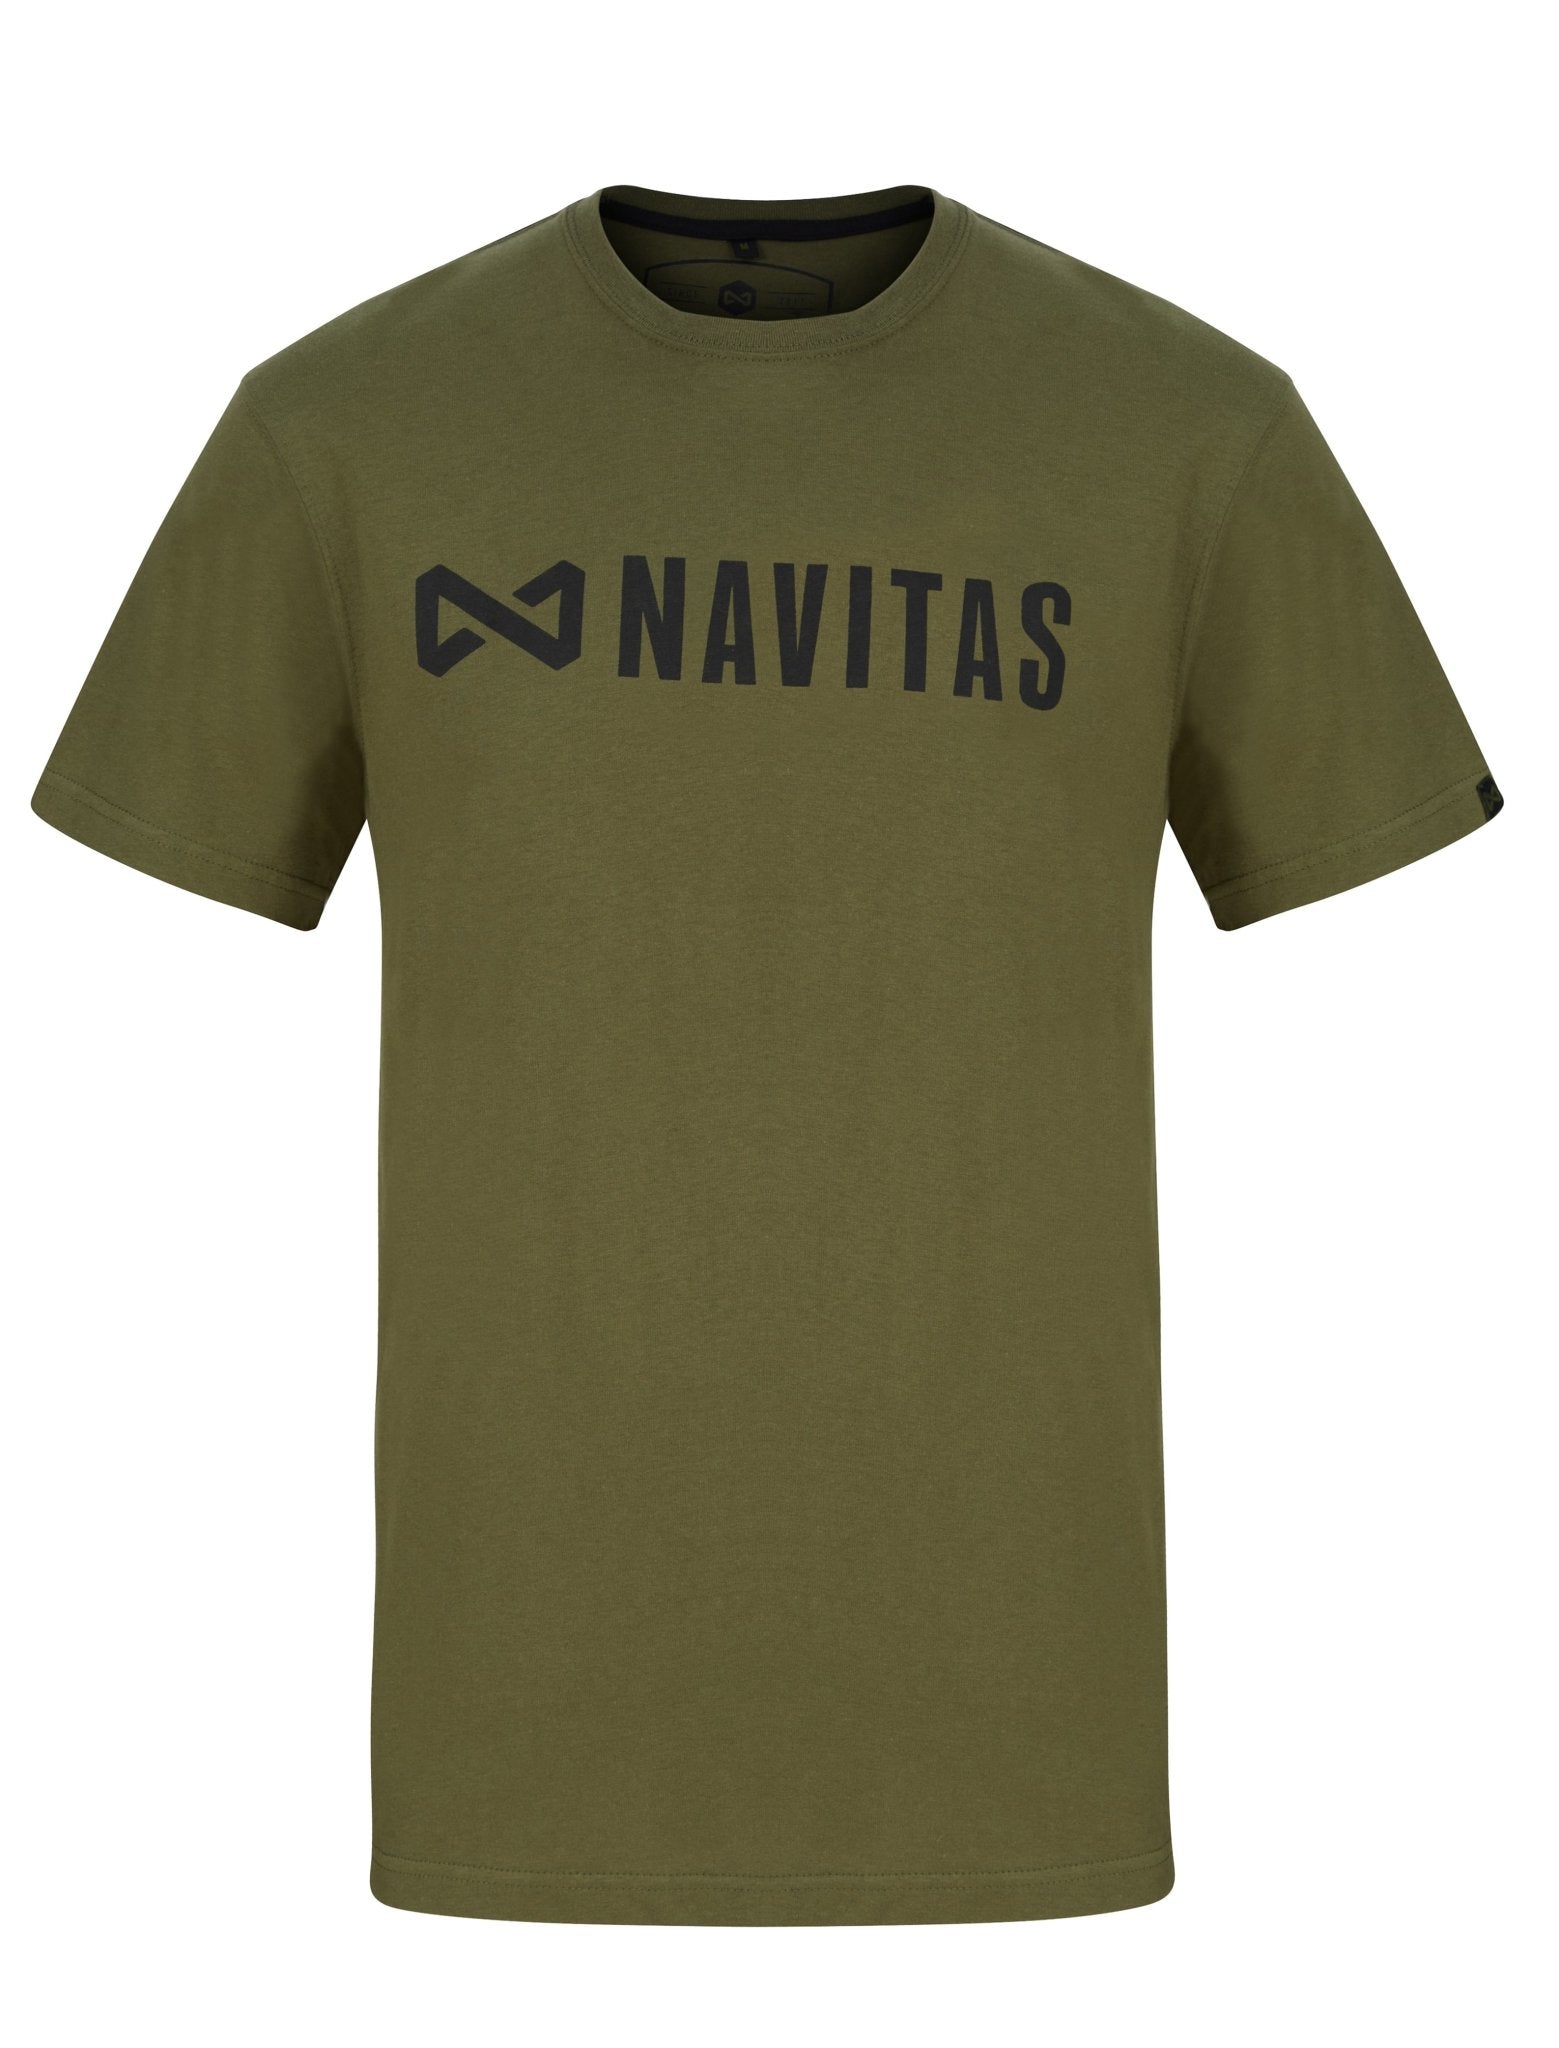 CORE Green T-Shirt, Men's Fishing T-Shirt